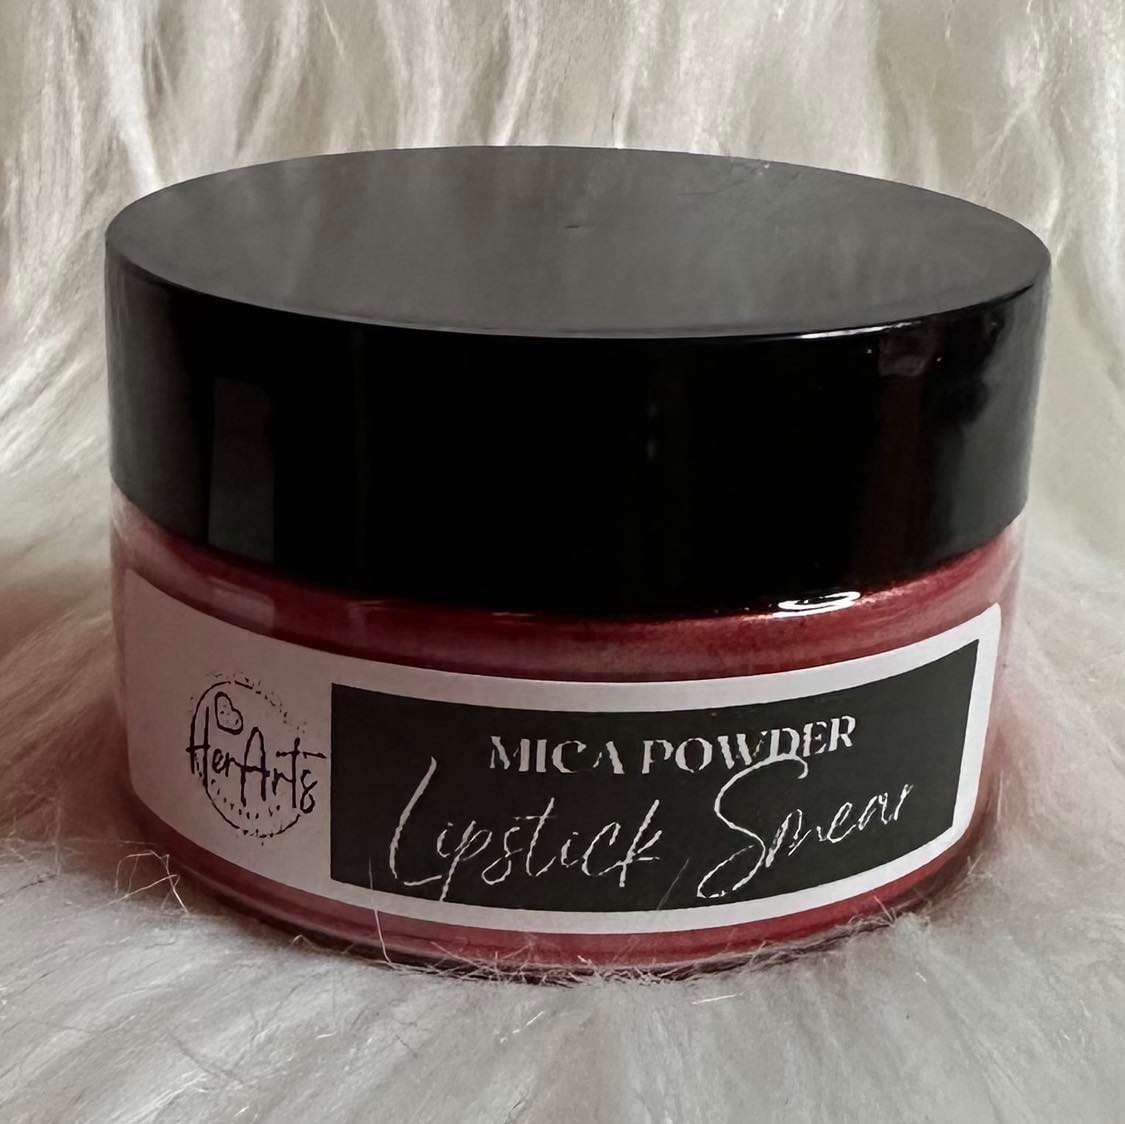 Mica Powder, Lipstick Smear